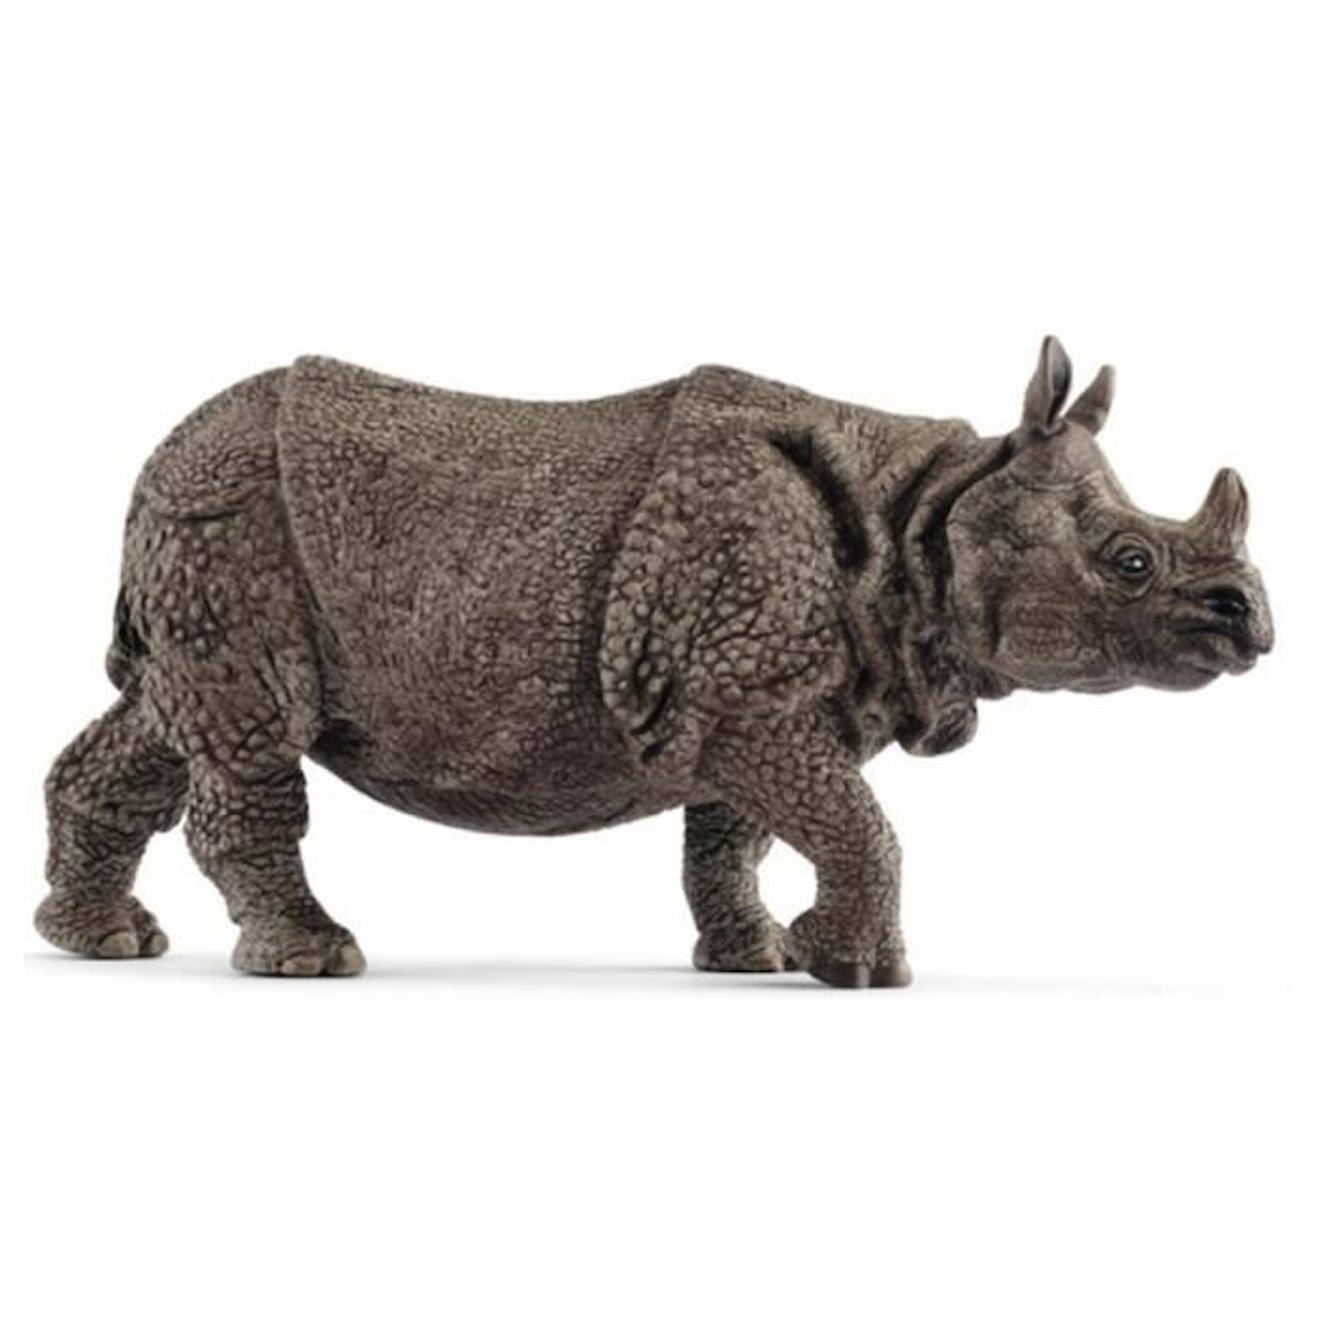 Figurine Rhinocéros Indien - Schleich - Pour Enfant - Couleur Beige - A Partir De 4 Ans Beige